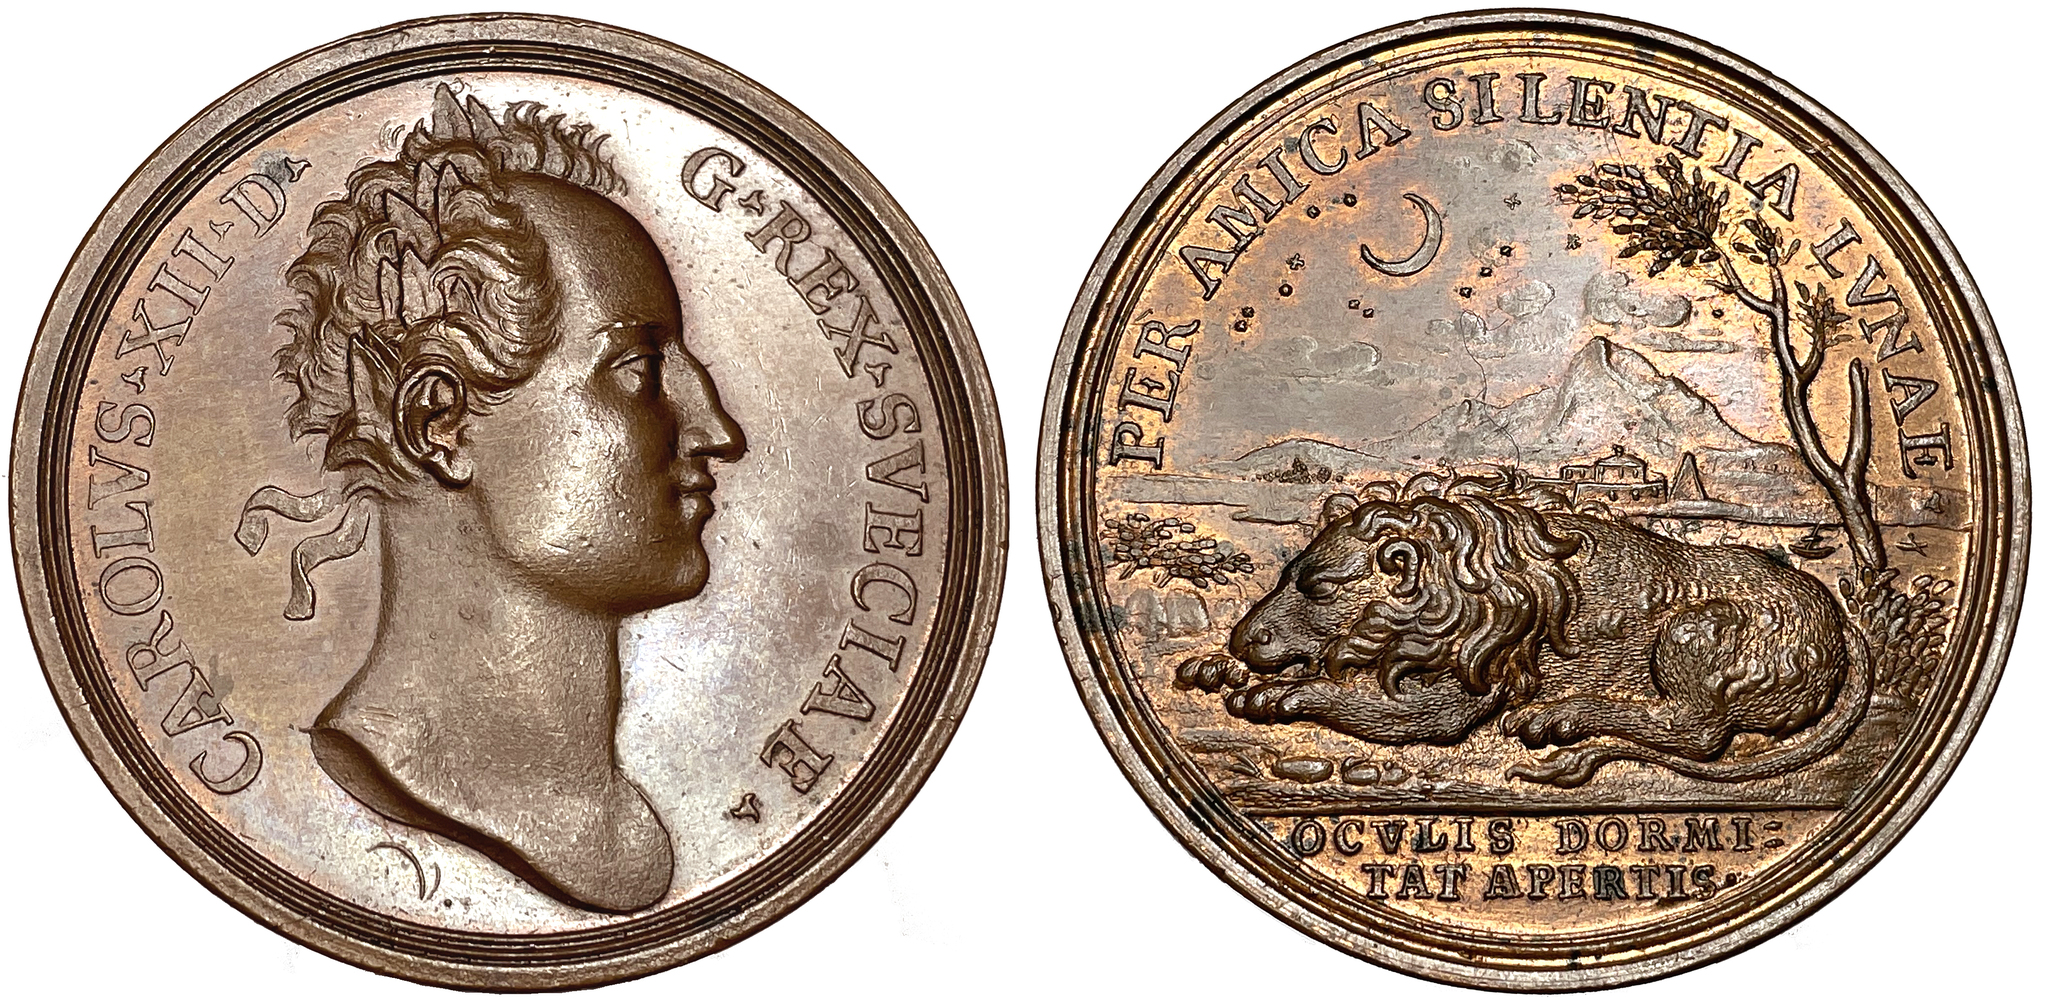 Karl XII - Kungens vistelse och kalabaliken i Bender 1709-1711 av Vestner - Vackert ocirkulerat exemplar och mycket sällsynt i brons - RRR